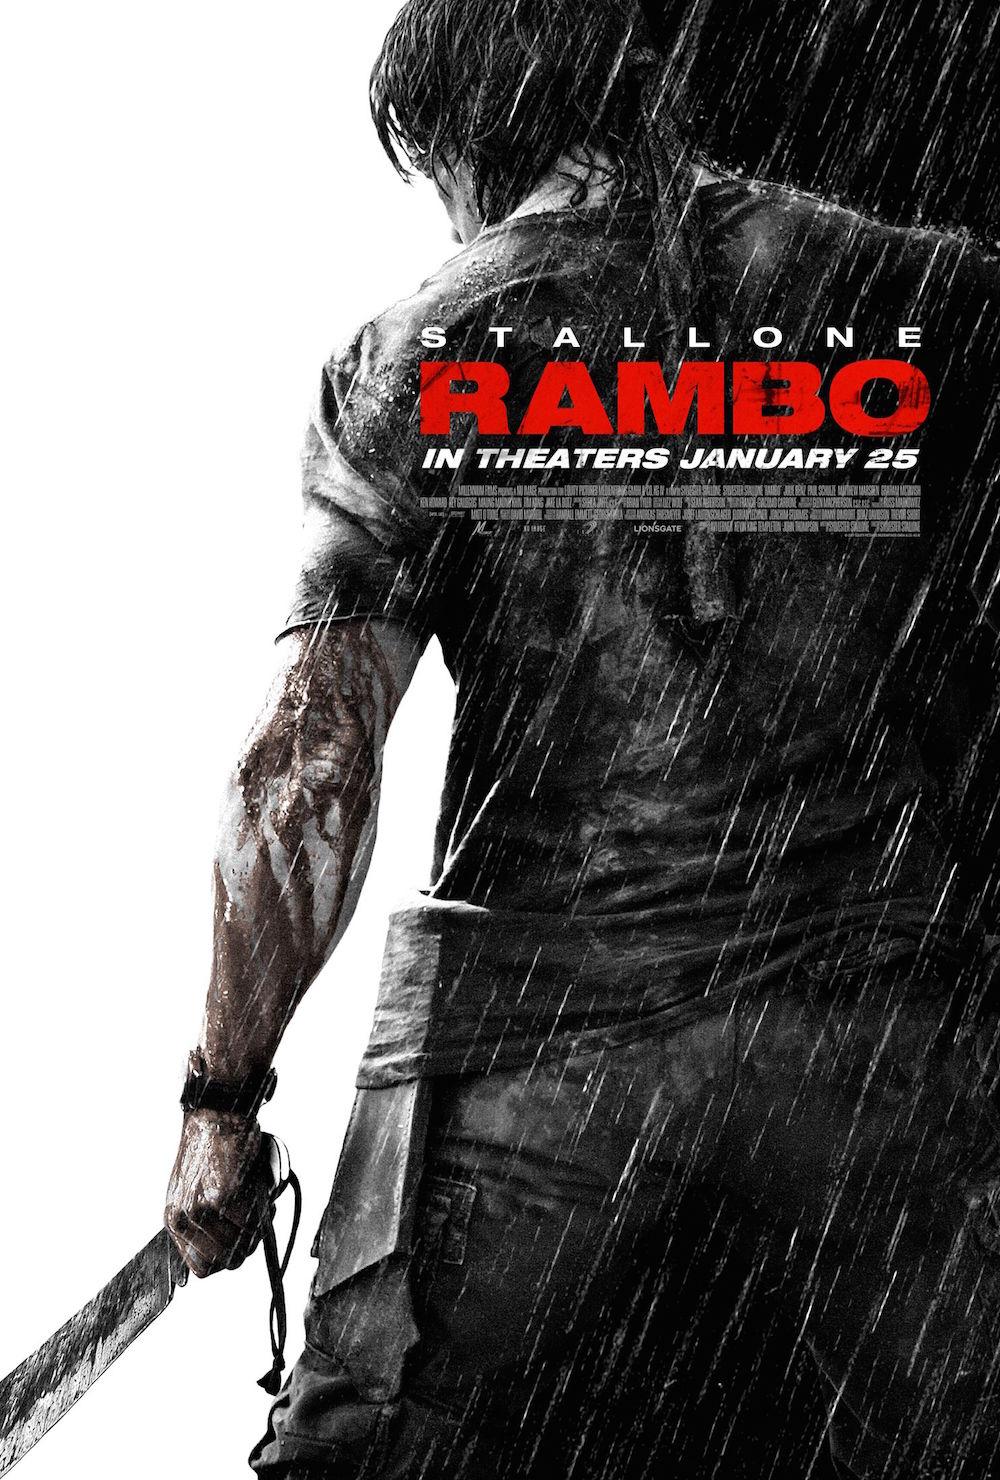 FULL MOVIE: Rambo (2008)